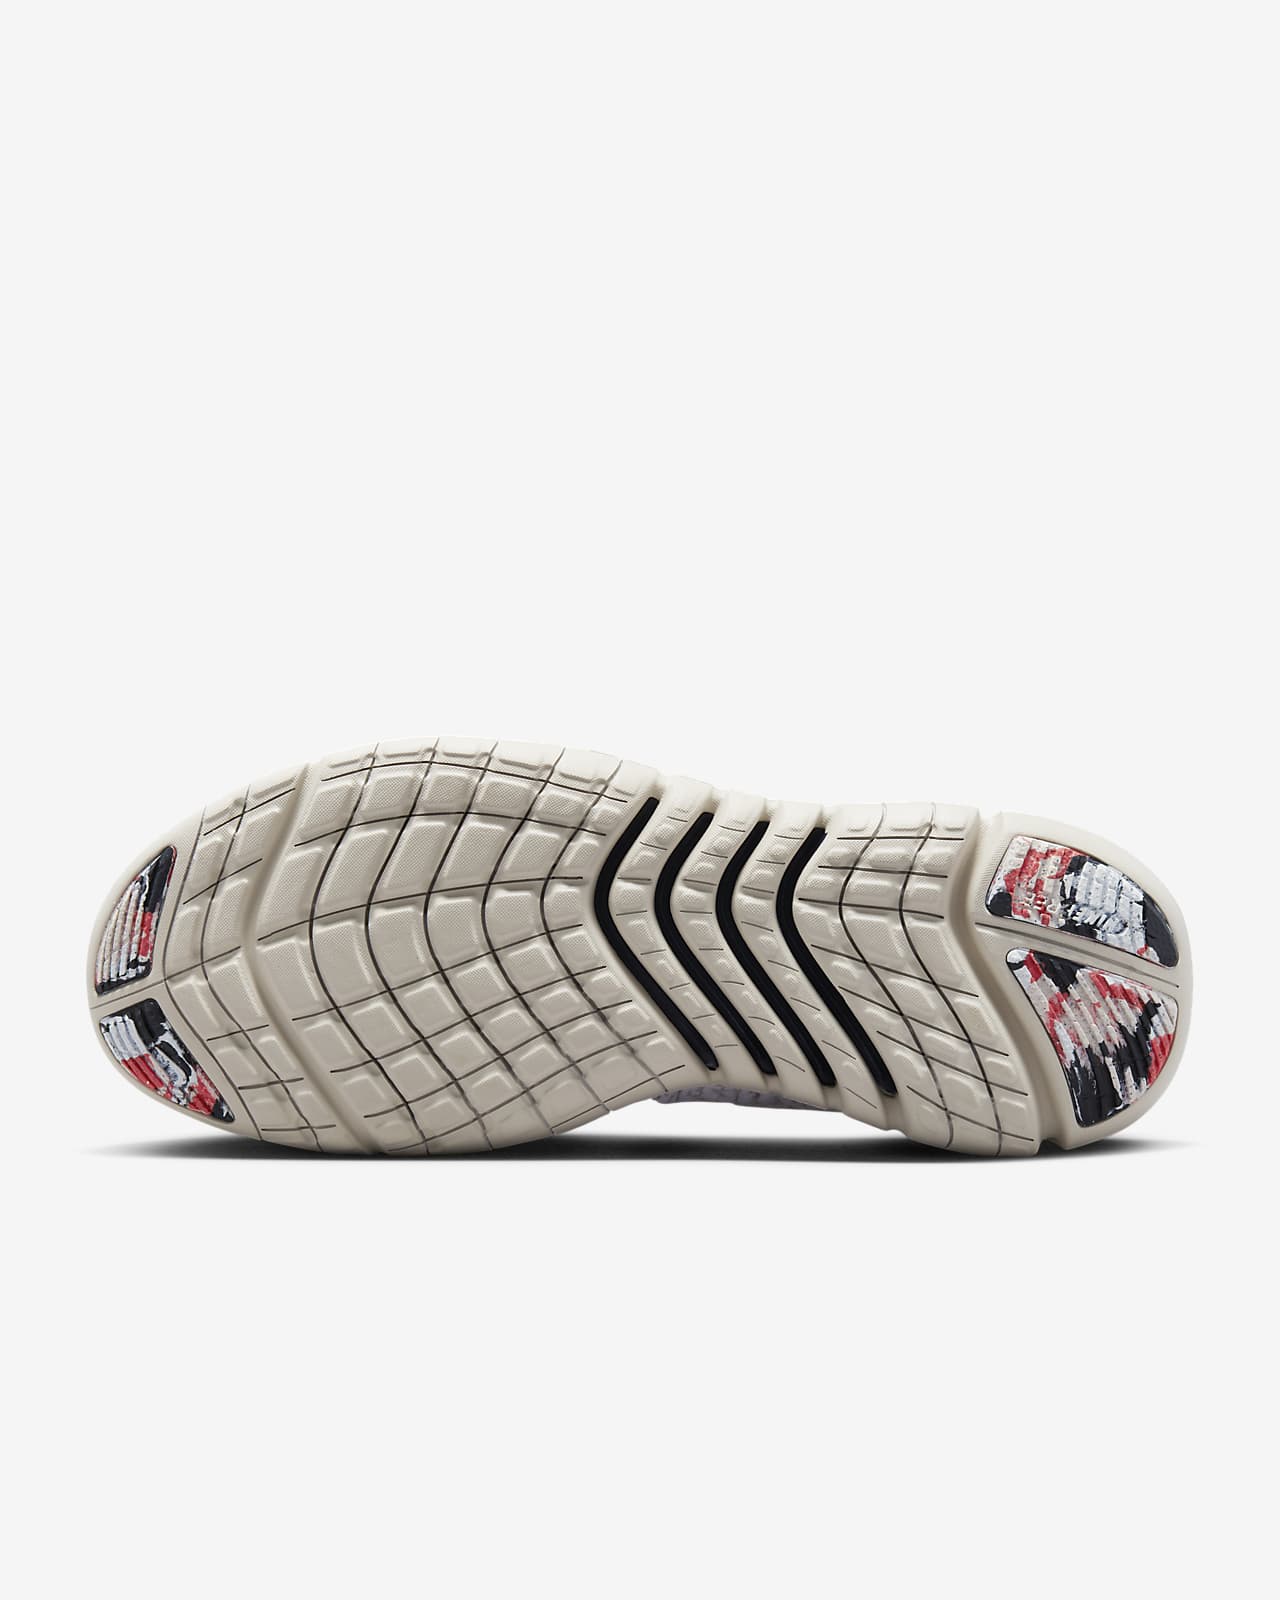 Van toepassing zijn Stun Bakkerij Nike Free Run 5.0 Hardloopschoenen voor heren (straat). Nike BE